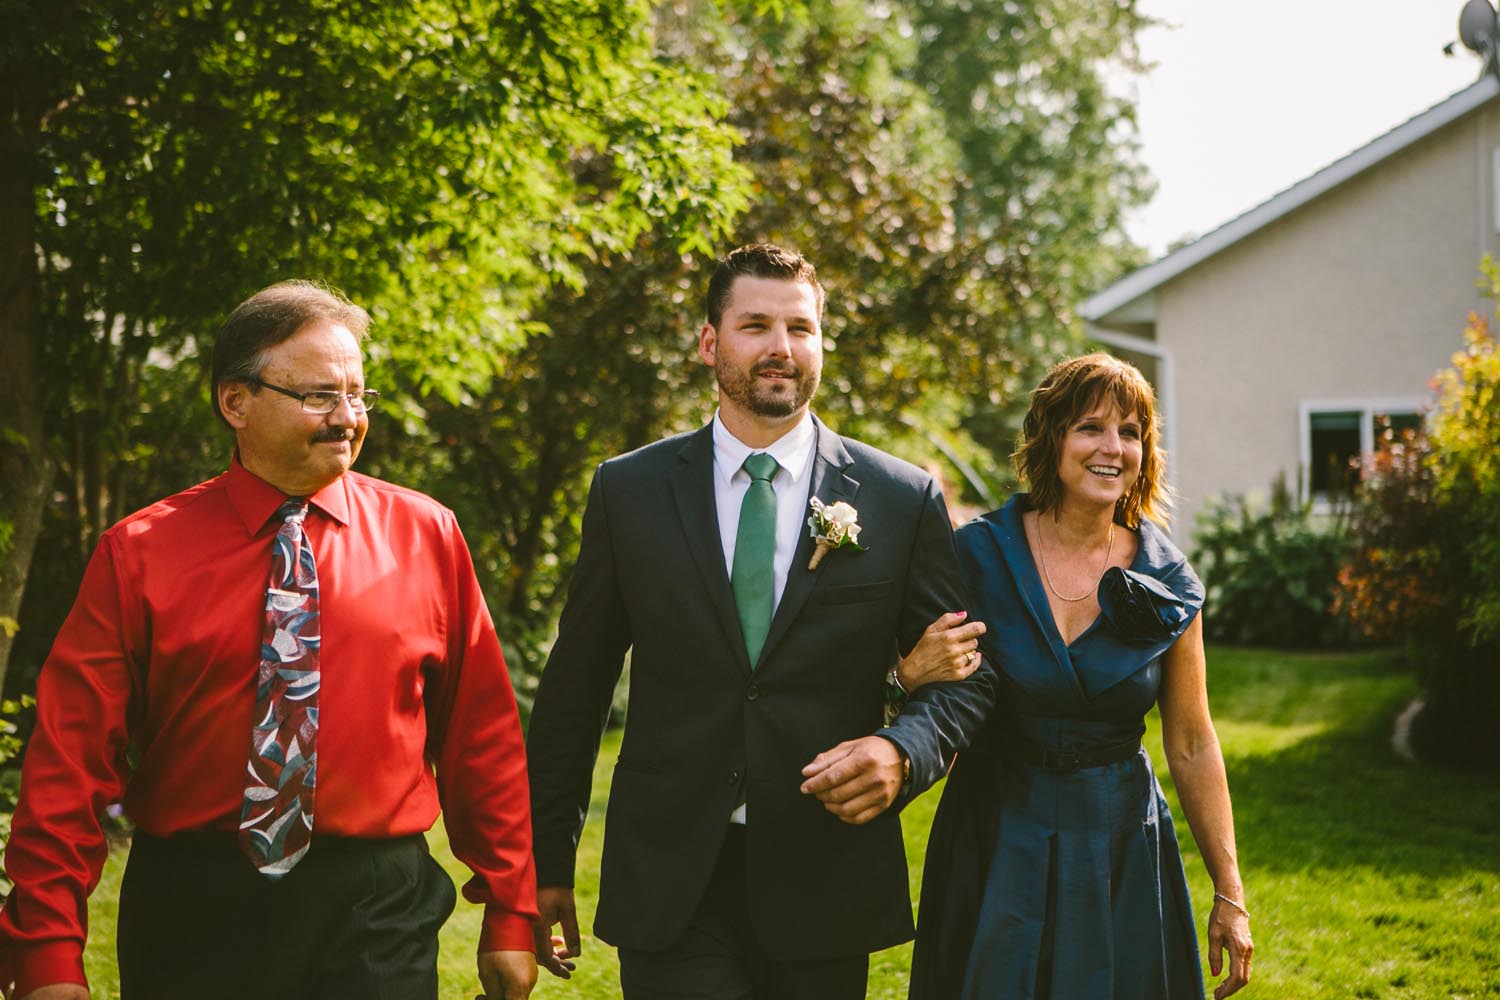 Kayla + Andy Kampphotography Winnipeg Wedding Photographers 